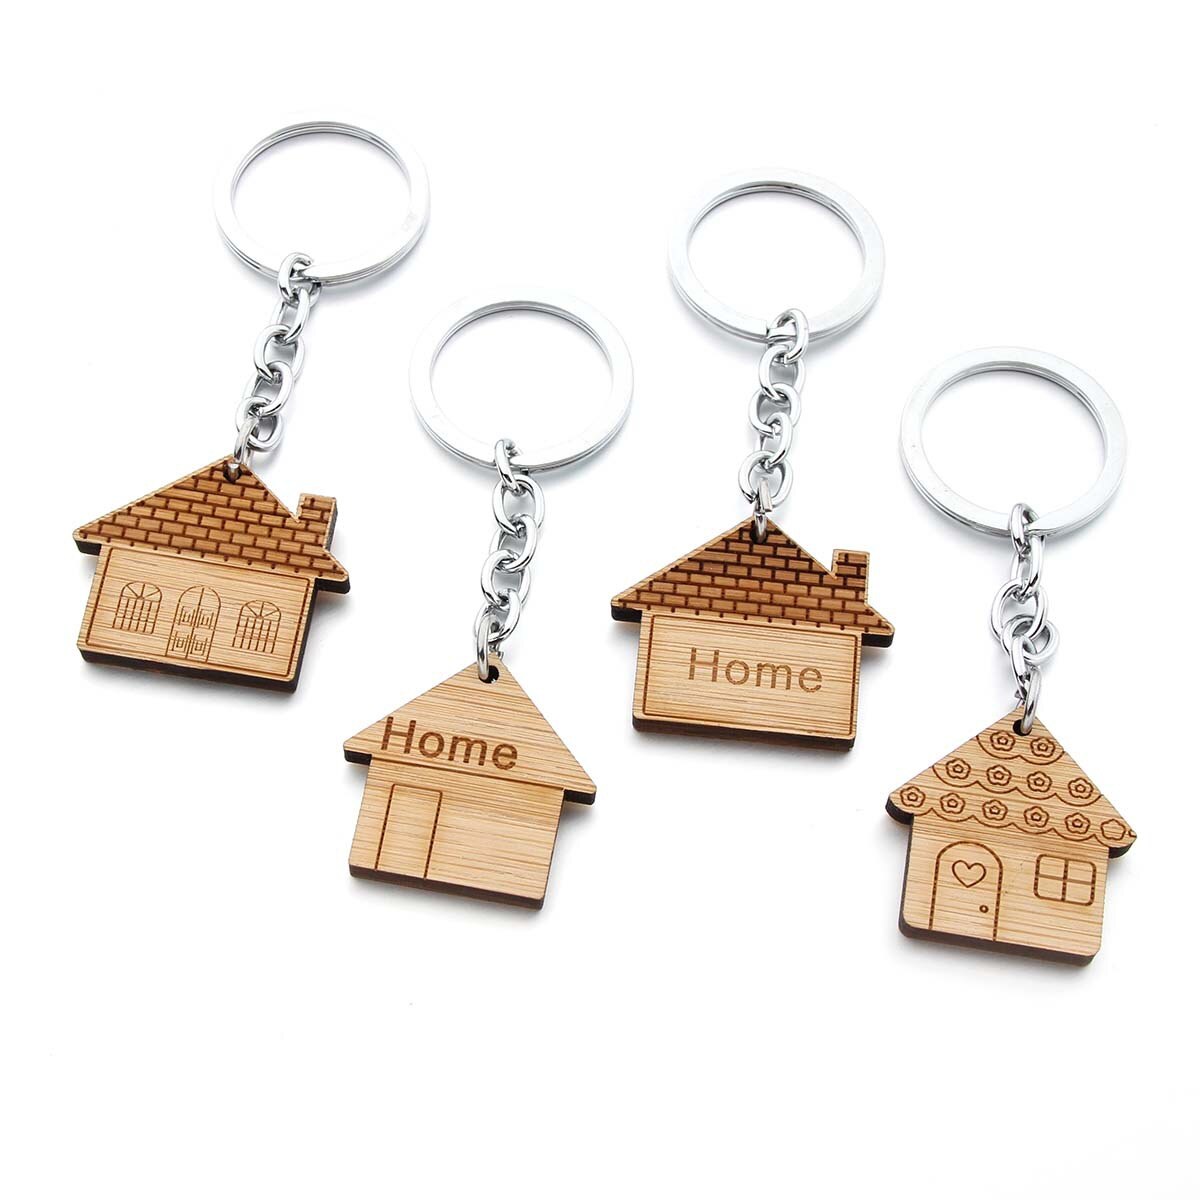 Aktuelt tilgængeligt salg nøgle spænde træ nøglering nøgle spænde hjem hus træ nøgle træ nøgle spænde nøgle spænde nøgle